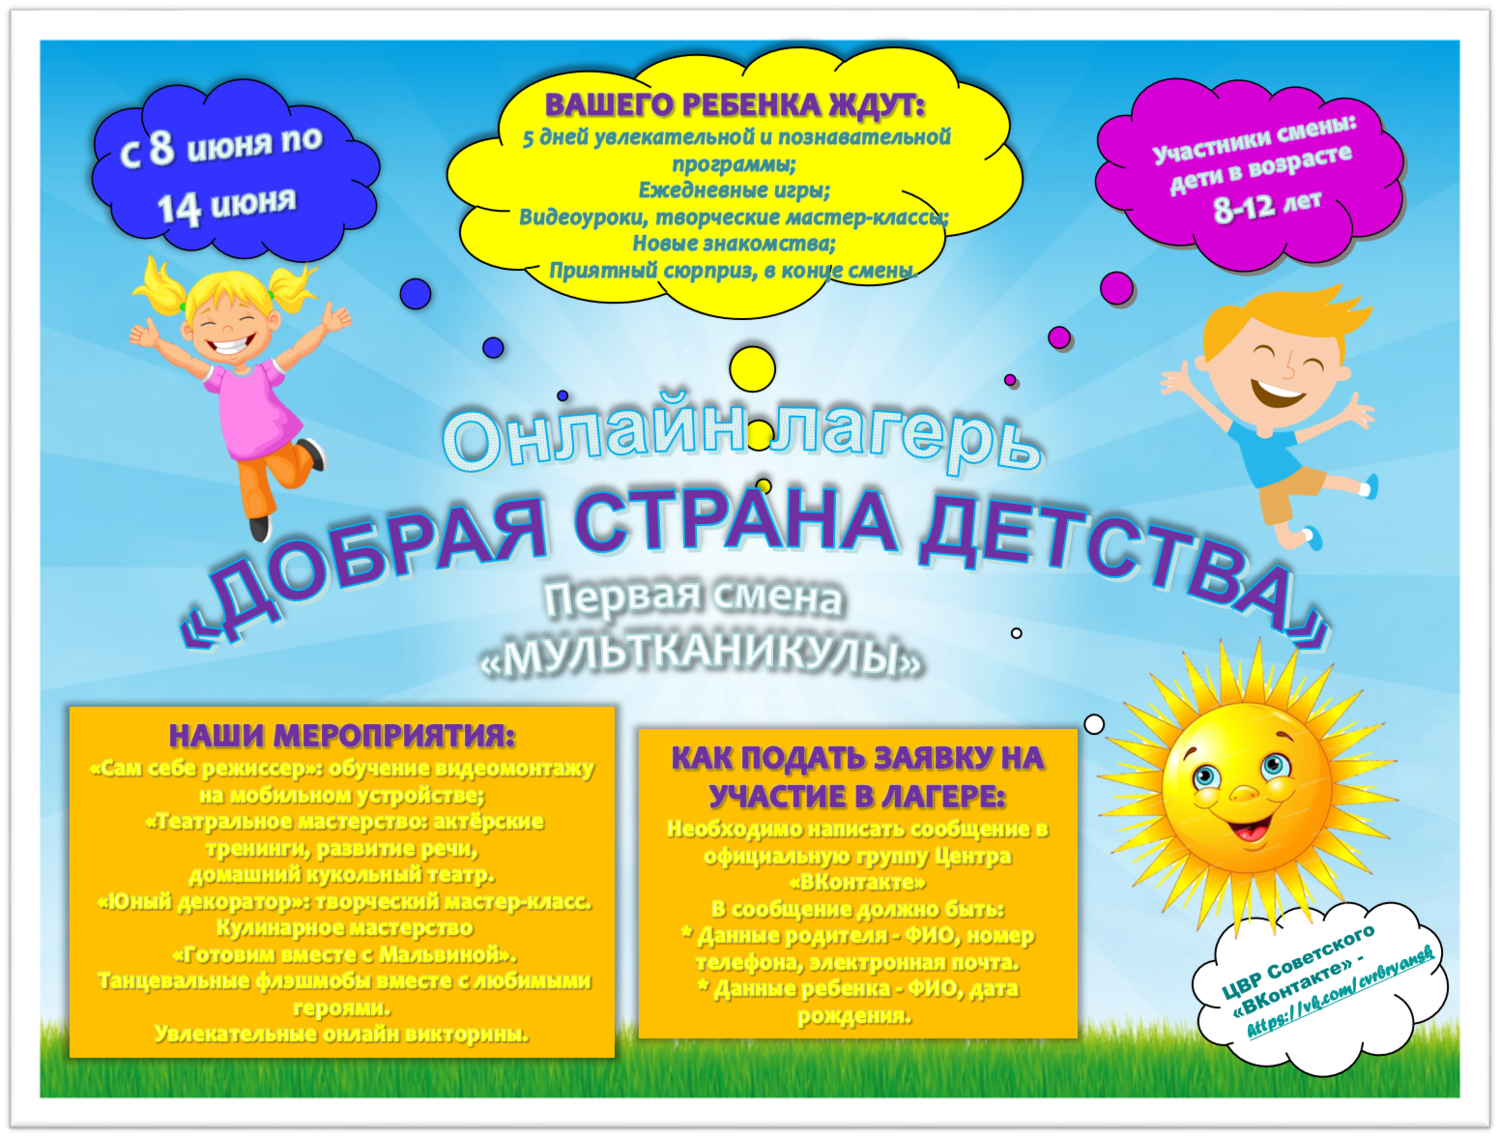 Игровые программы для летнего отдыха детей – сборник увлекательных тематических программ для центров детского досуга и лагерей отдыха